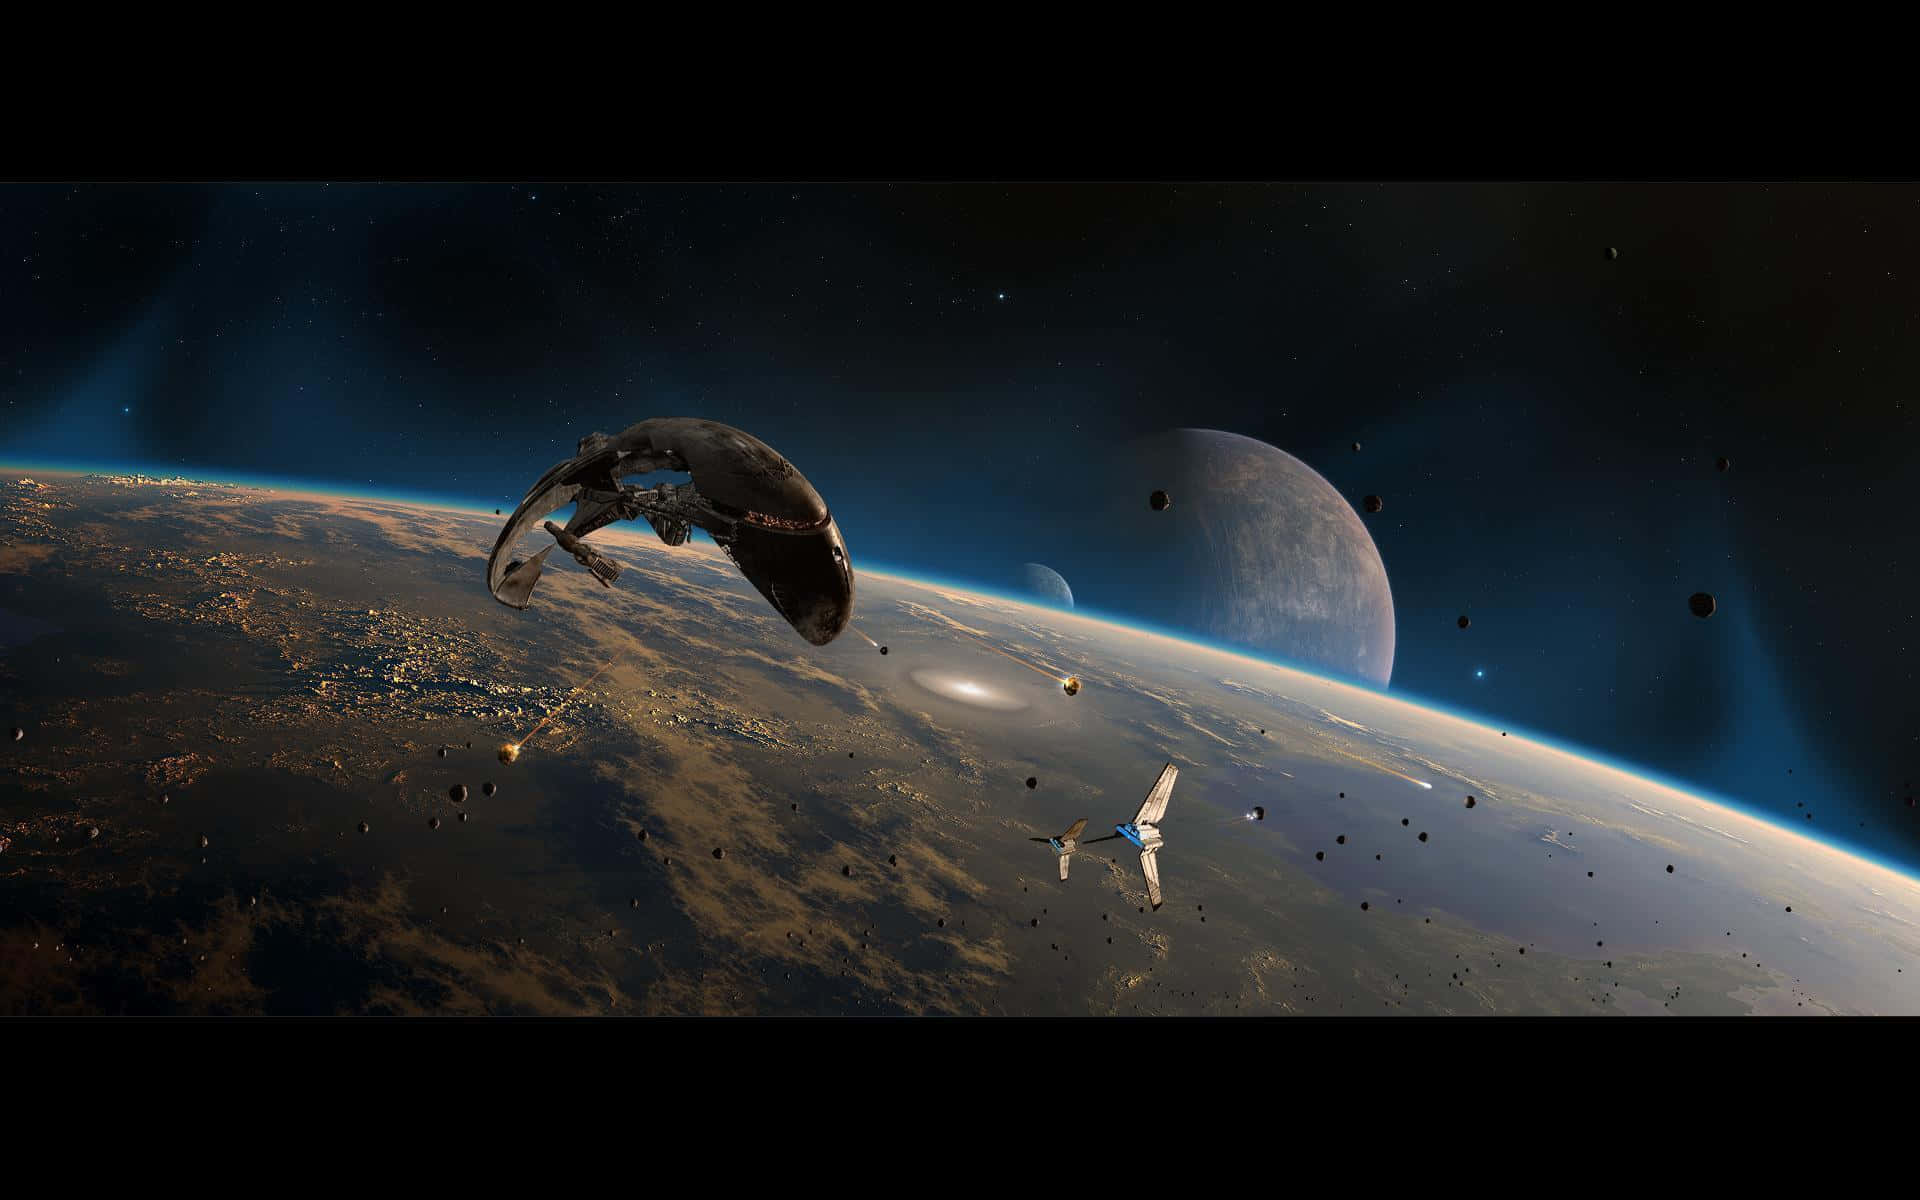 Star Wars Space Battle Scene Wallpaper